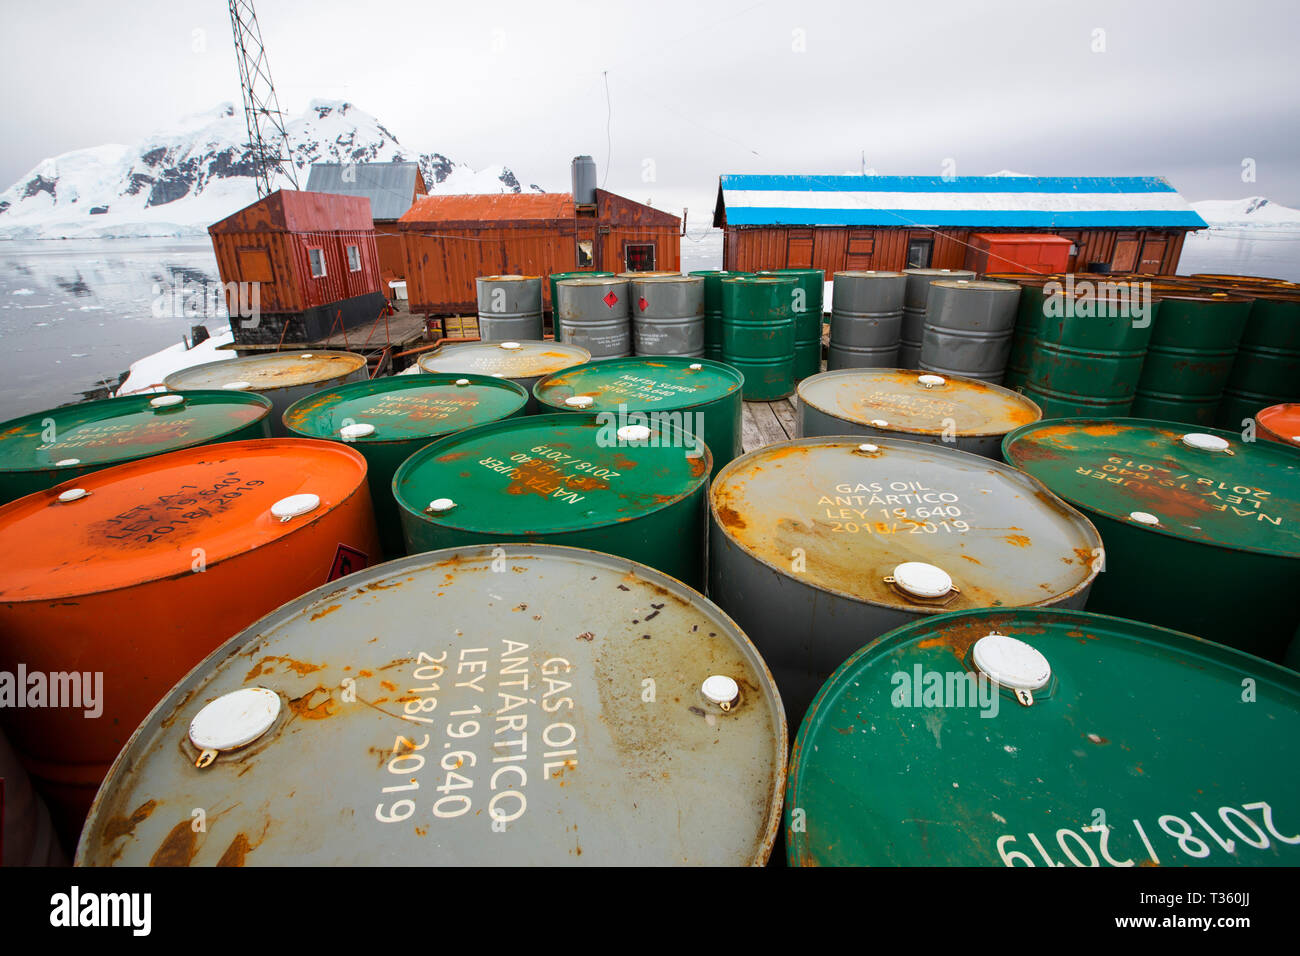 Barils de pétrole à Almirante Brown station à Neko Harbour dans la péninsule antarctique, Paradise Bay. Banque D'Images